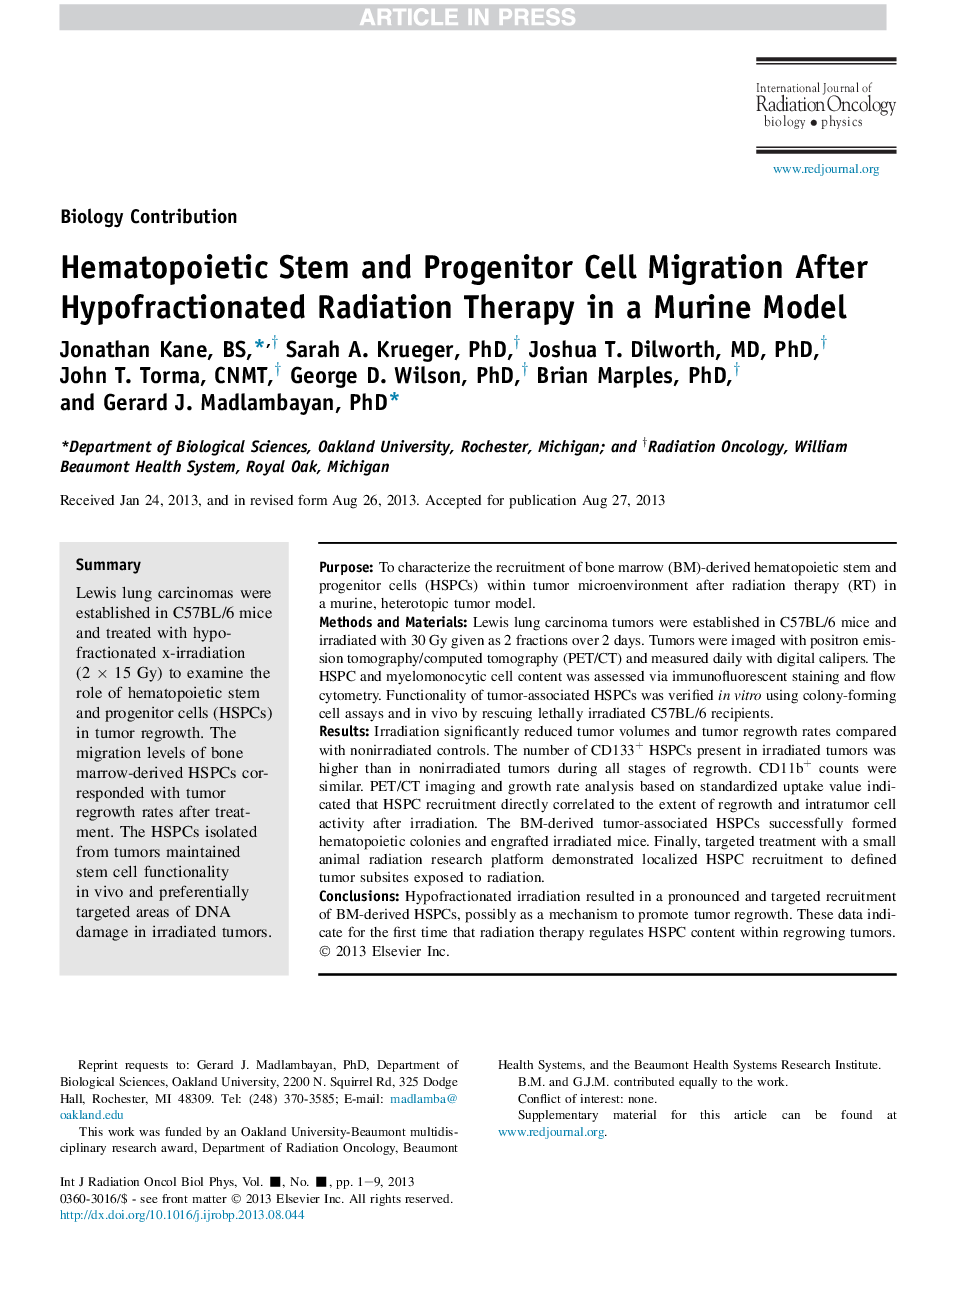 مهاجرت سلول های بنیادی و پیش داوری هماتوپوئیت پس از درمان پرتوهای هیپوفراکسیون شده در یک مدل موش 